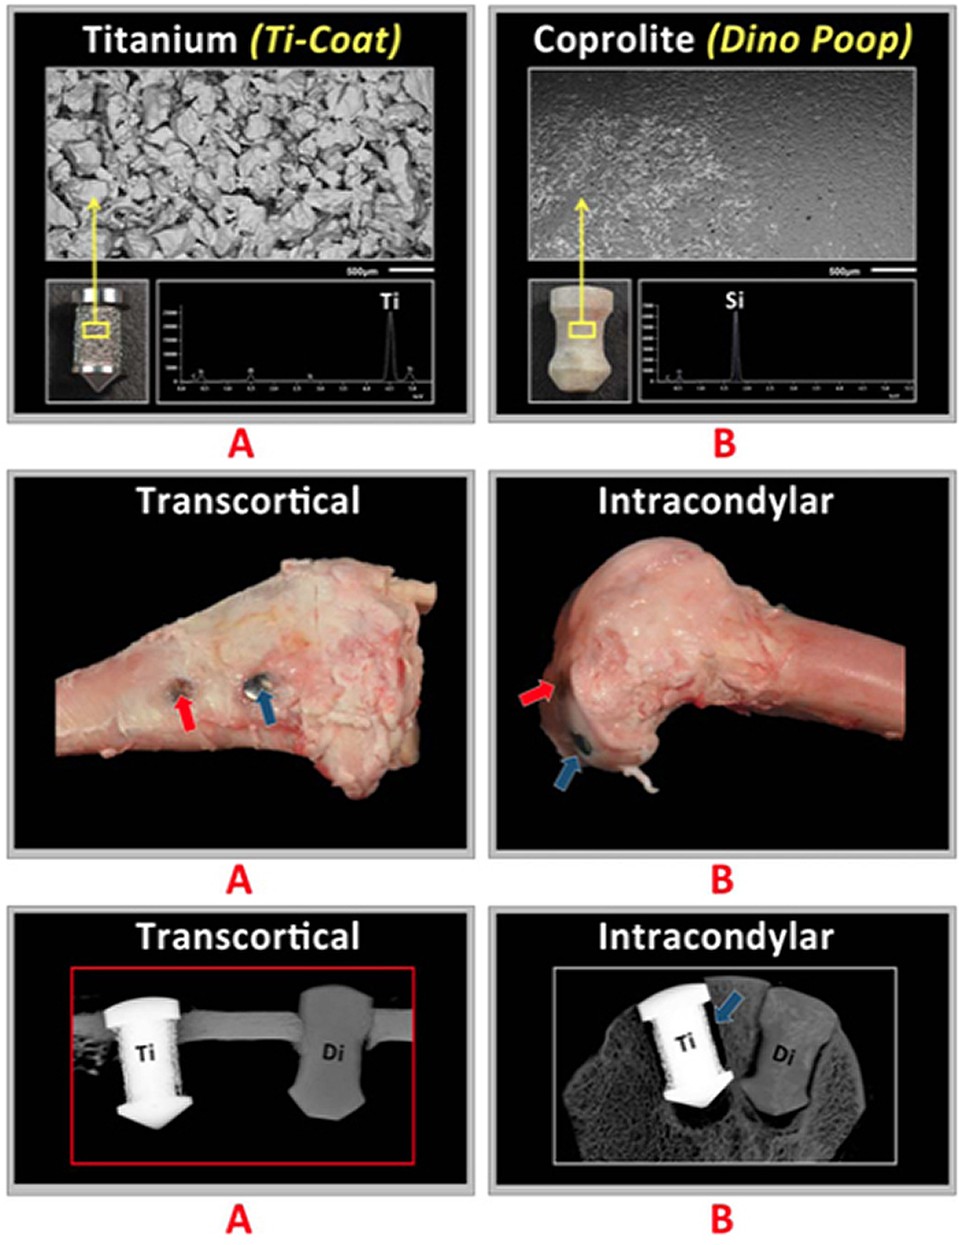 Сравнение креплений, имплантируемых в кости людей: А - из титана, В - из копролитов динозавров. Слева оба имплантата вживлены в тело кости, а справа в губчатое вещество 